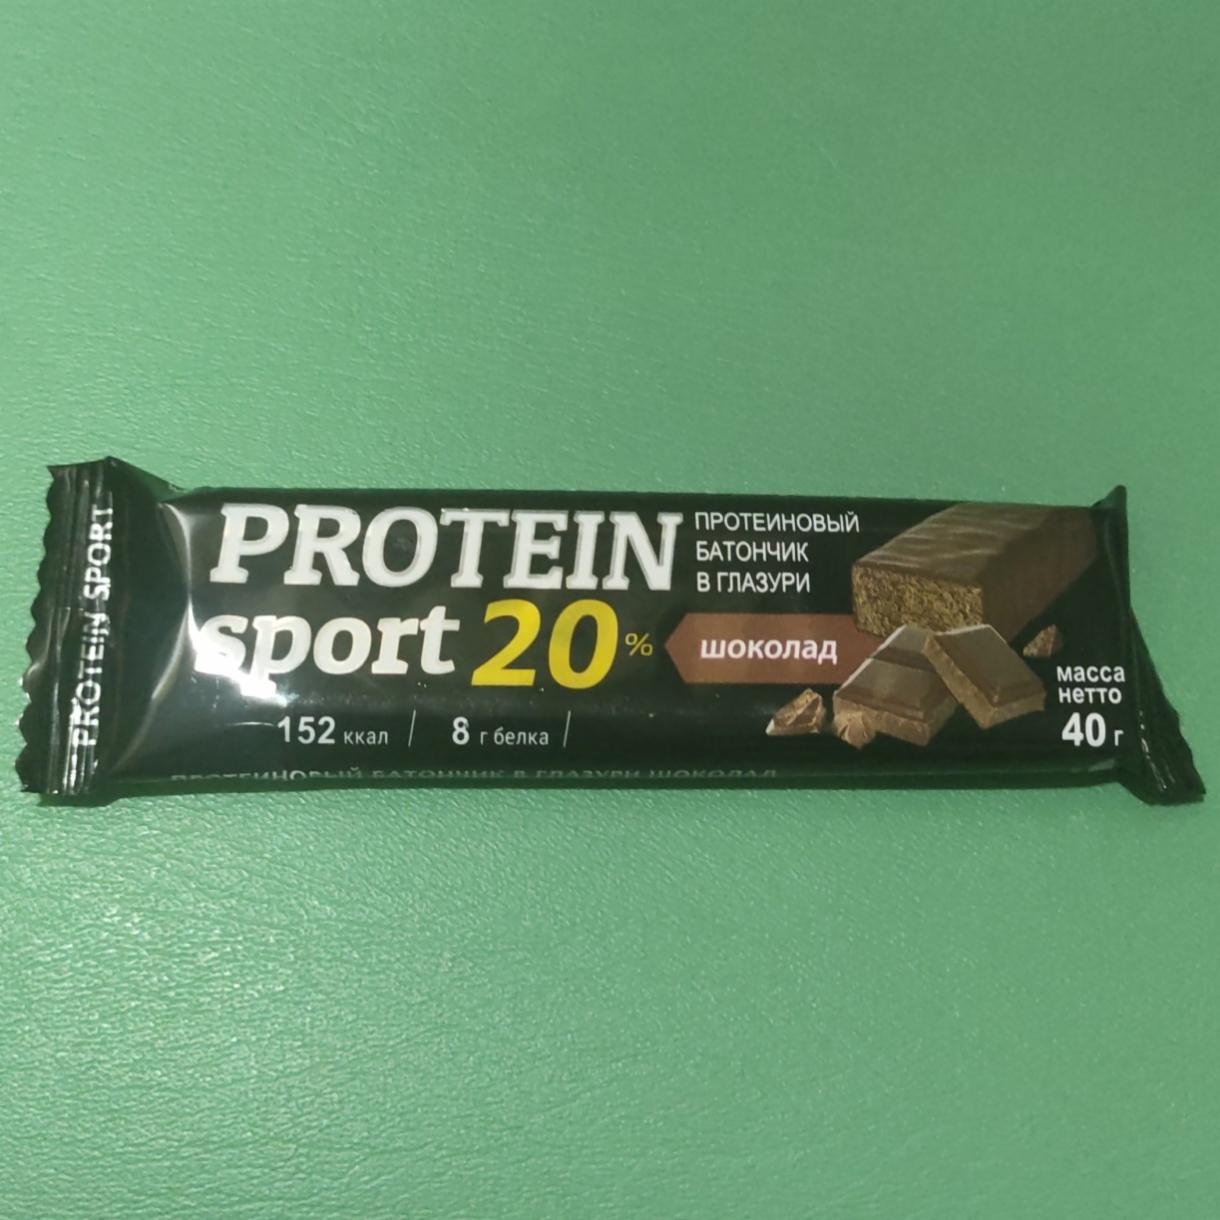 Фото - Протеиновый батончик в глазури Protein sport 20% шоколад Effort